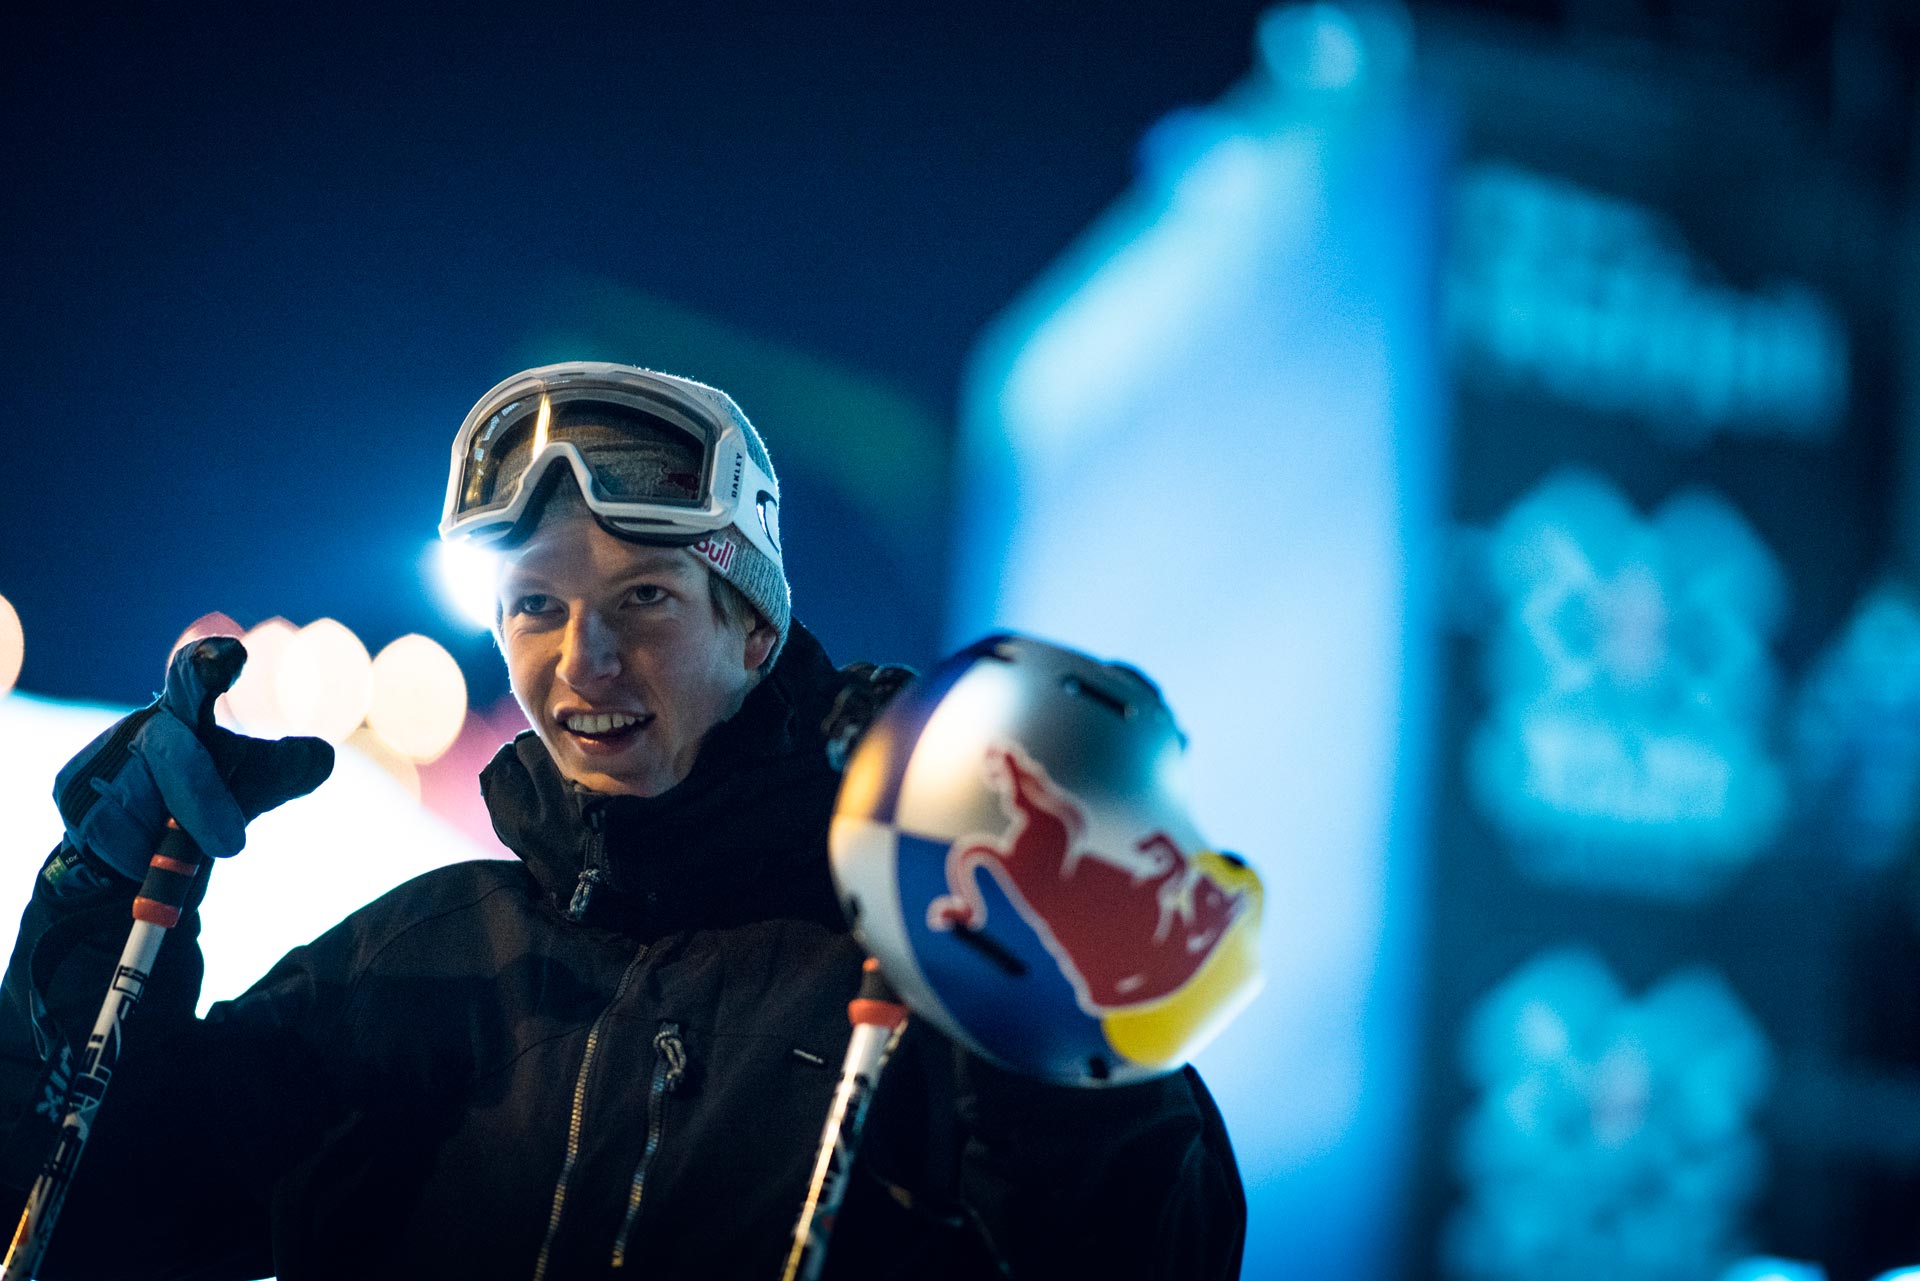 Der glückliche Sieger im Slopestyle bei den X Games 2017 in Norwegen: Oystein Braten - Foto: Red Bull Content Pool